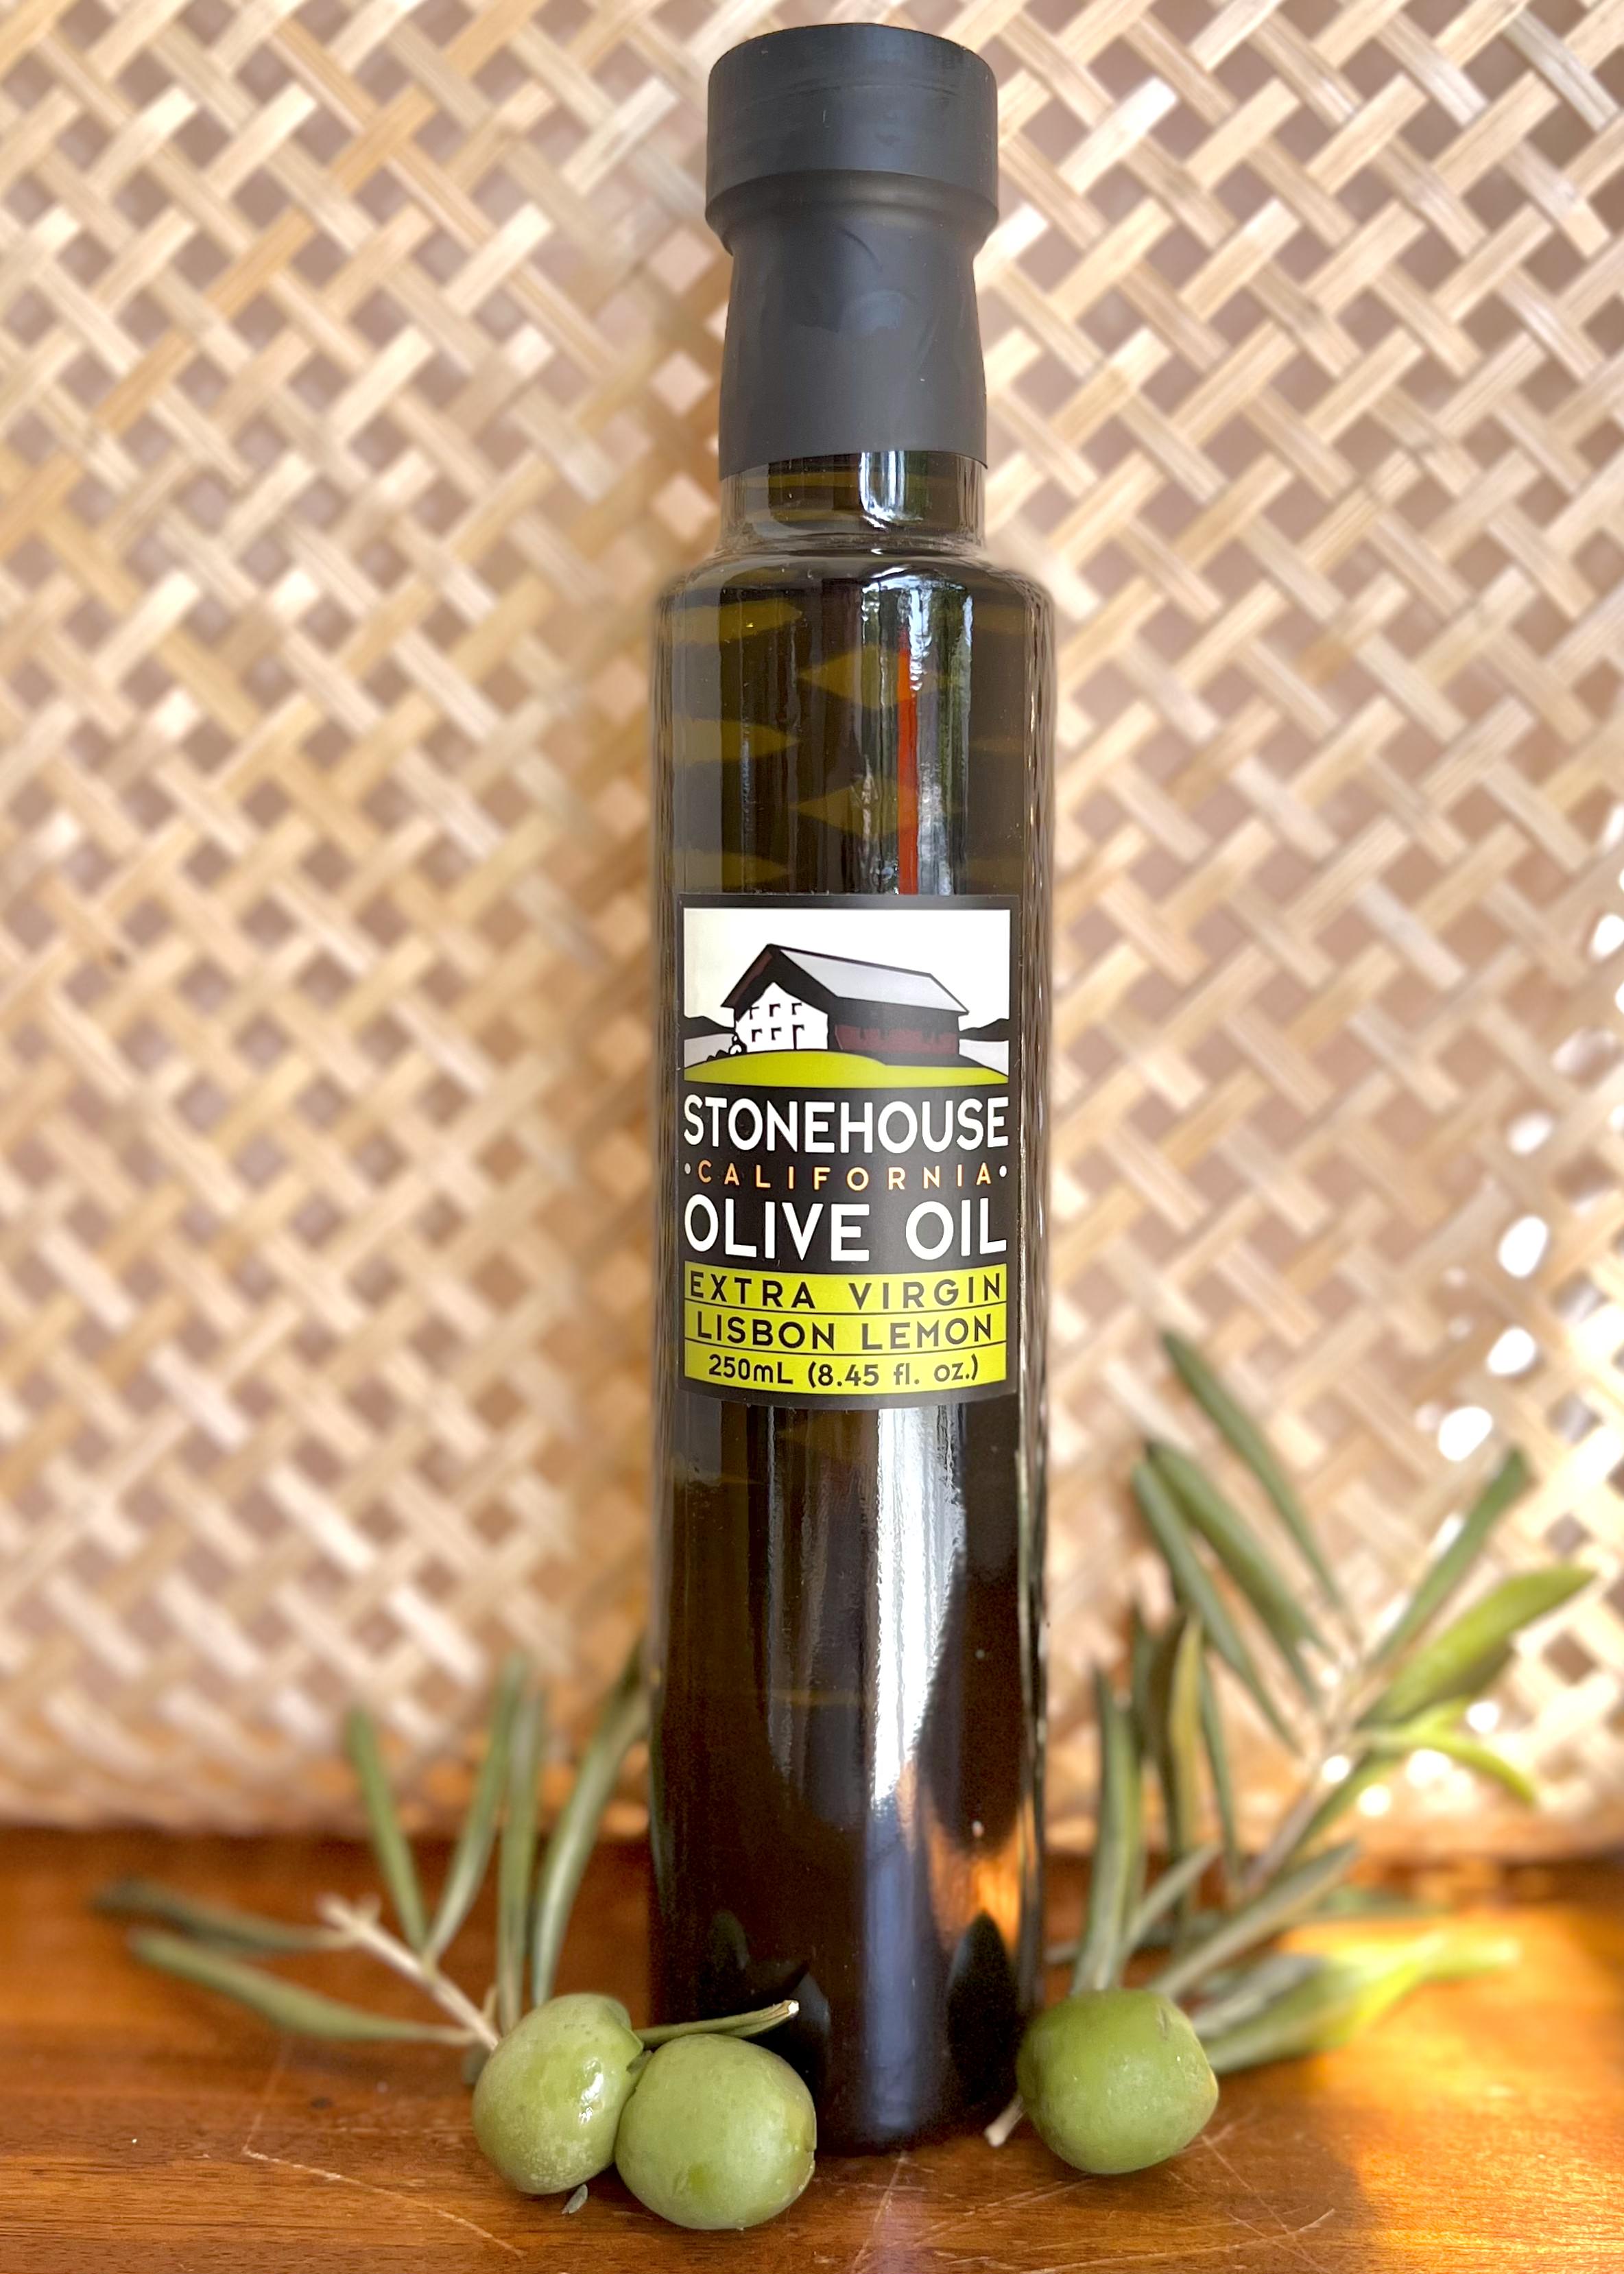 Stonehouse Lisbon Lemon Extra Virgin Olive Oil